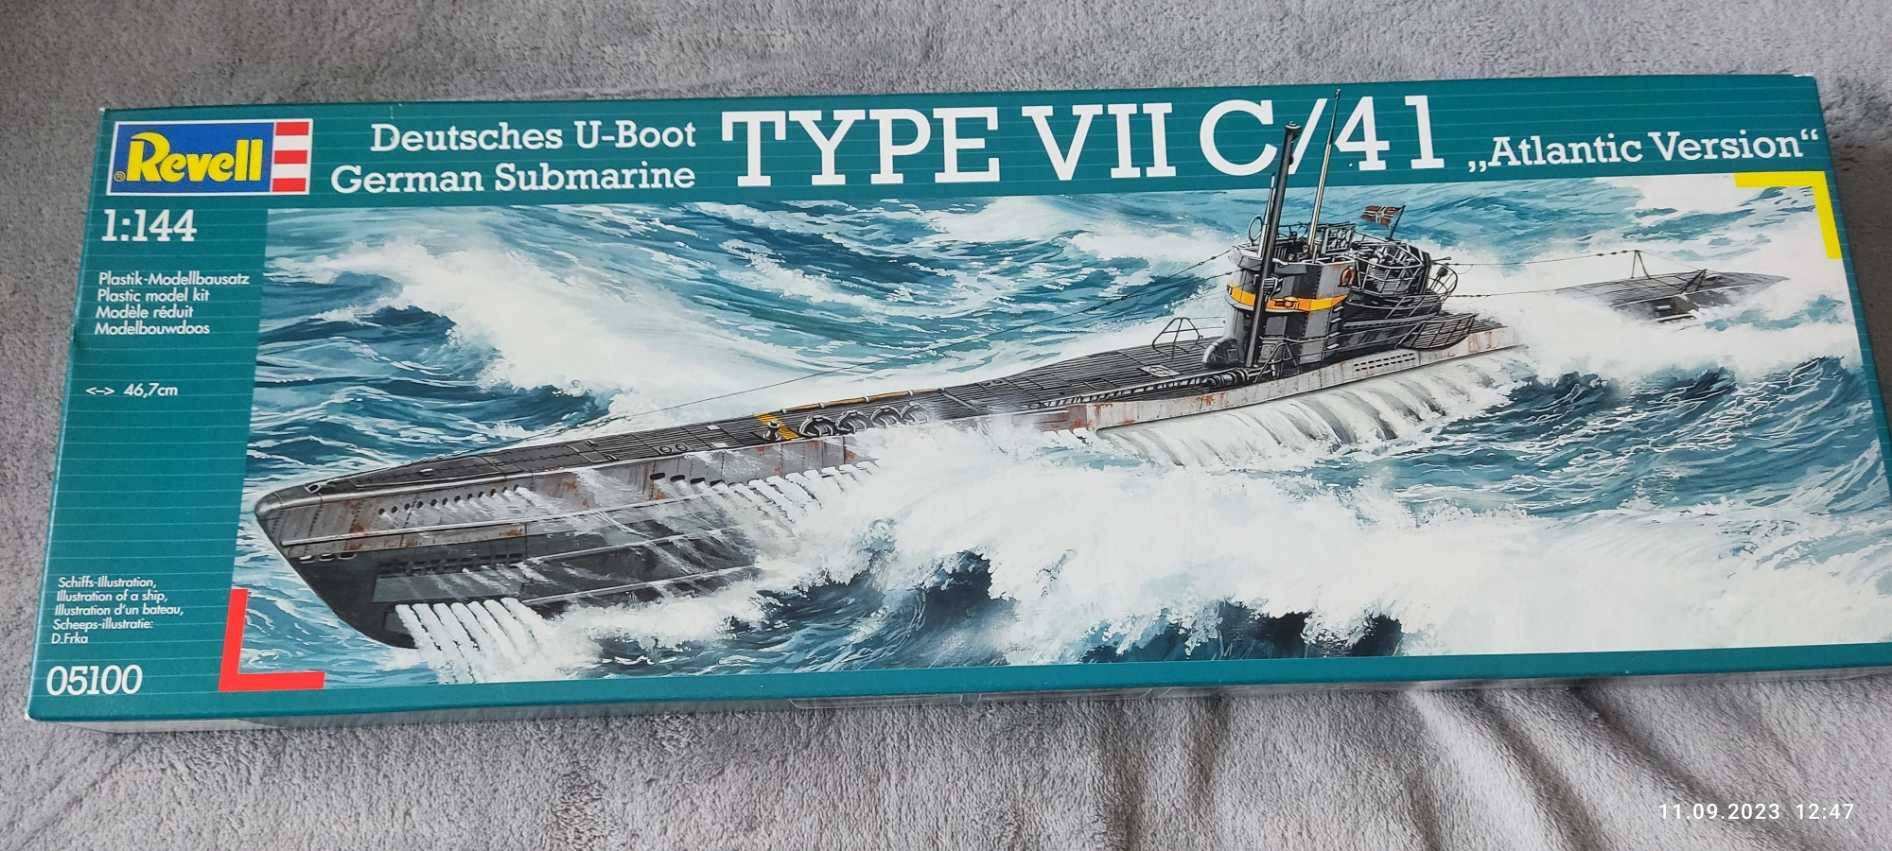 Revell nowy model okrętu U-boot type VIIc/41 skala 1:144